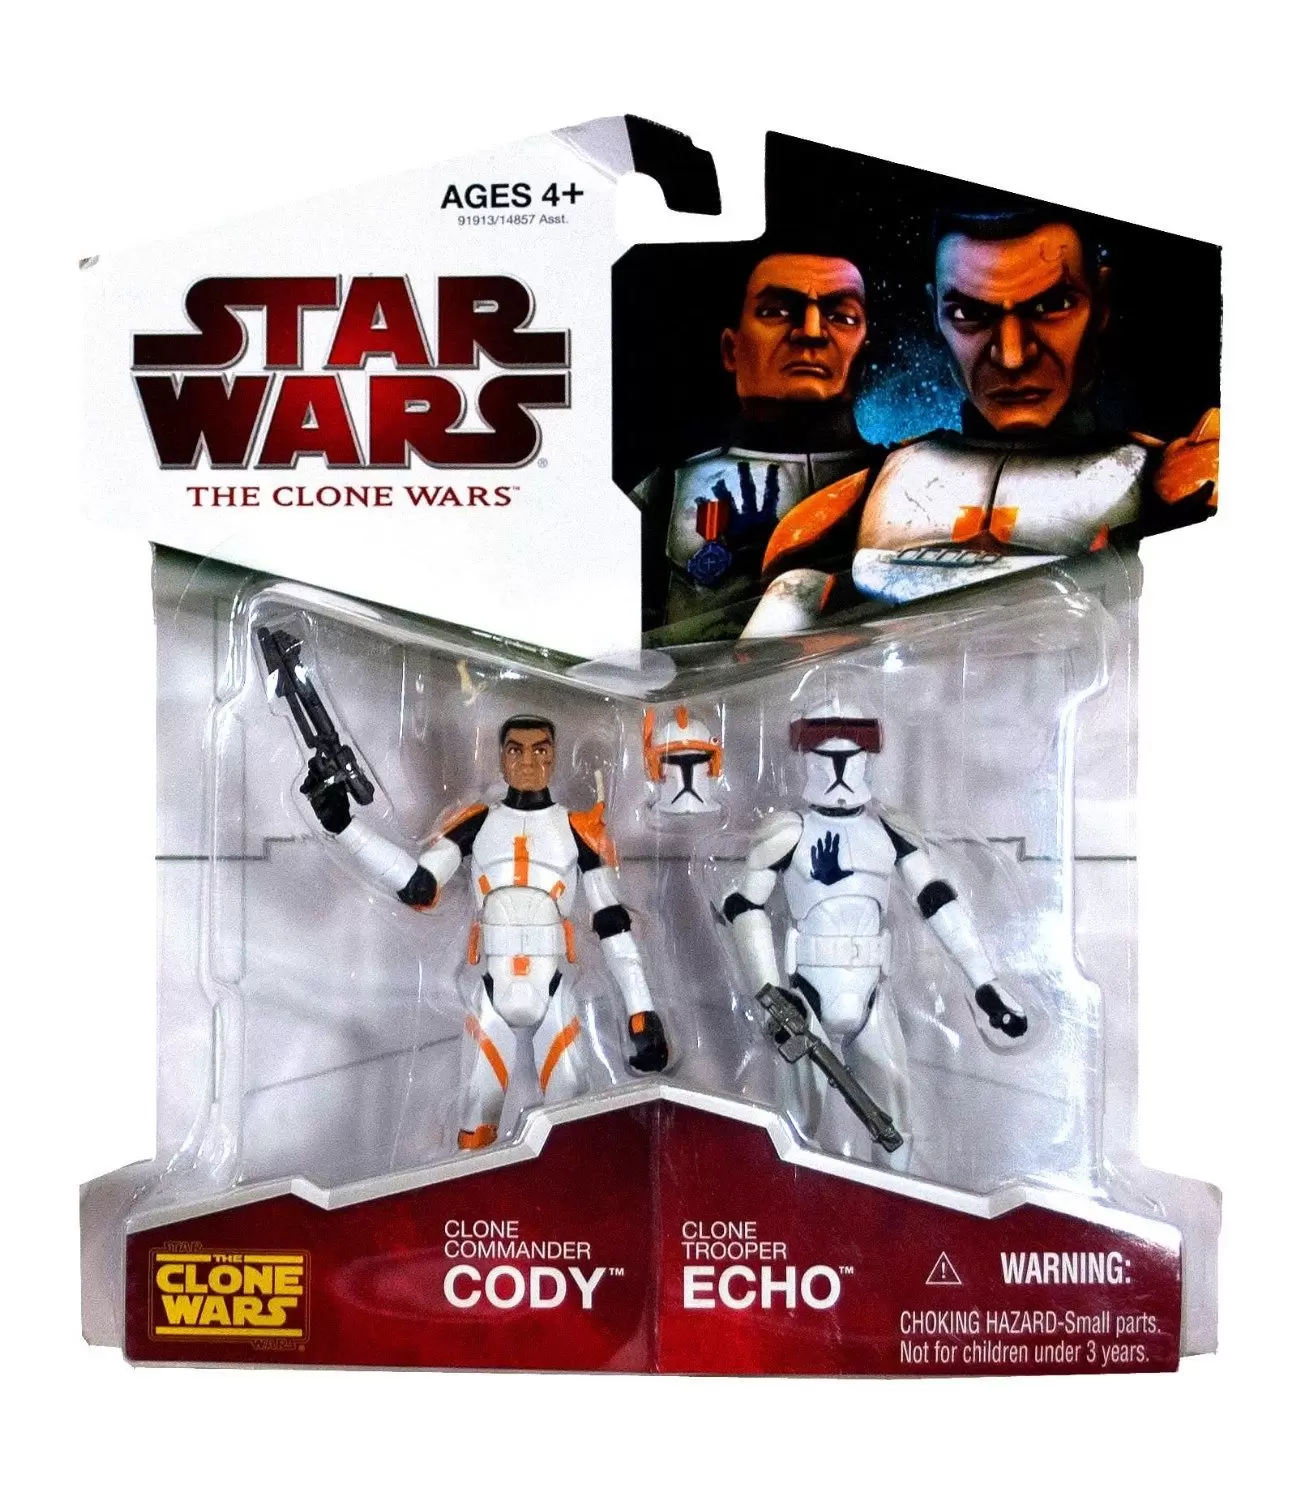 The Clone Wars (TCW 2009) - Clone Commander Cody & Clone Trooper Echo